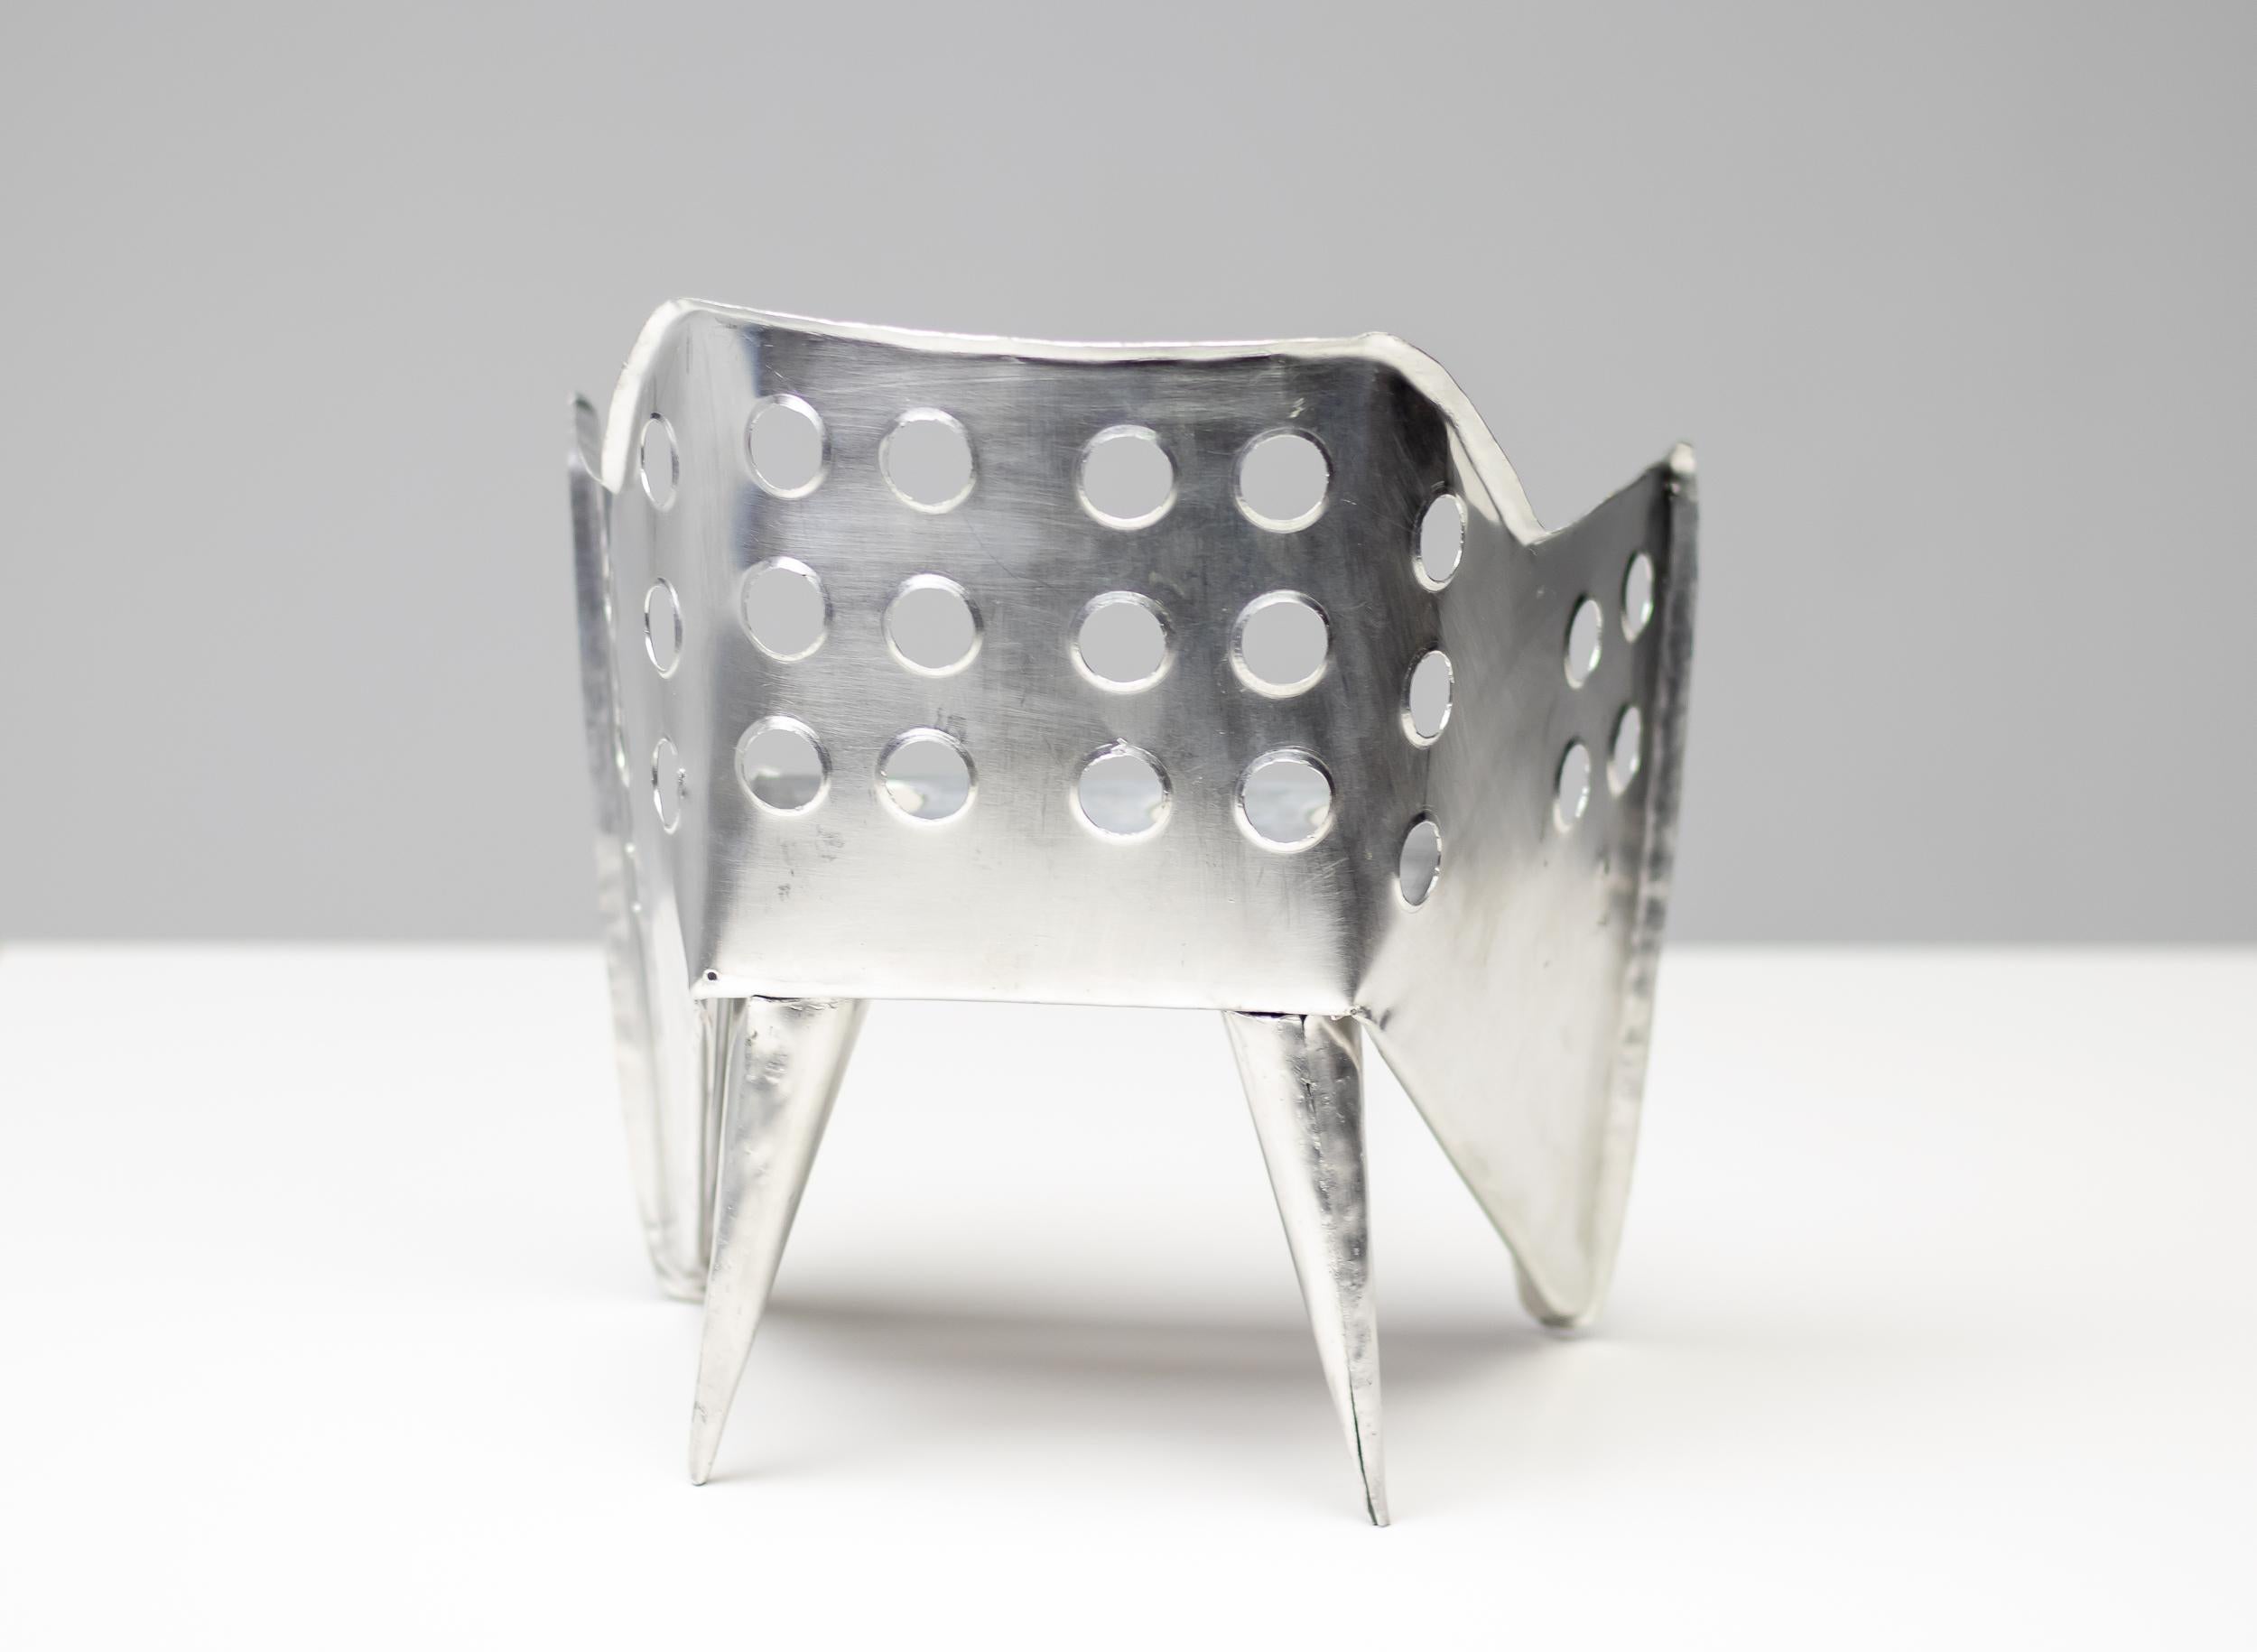 Außergewöhnlich gut ausgeführtes, handgefertigtes, maßstabsgetreues Modell dieses sehr seltenen, von Gerrit Rietveld entworfenen Stuhls.
Unmarkiert. Wenn Sie verzweifelt nach dem perfekten Geschenk für einen Architekten suchen, sind Sie hier genau